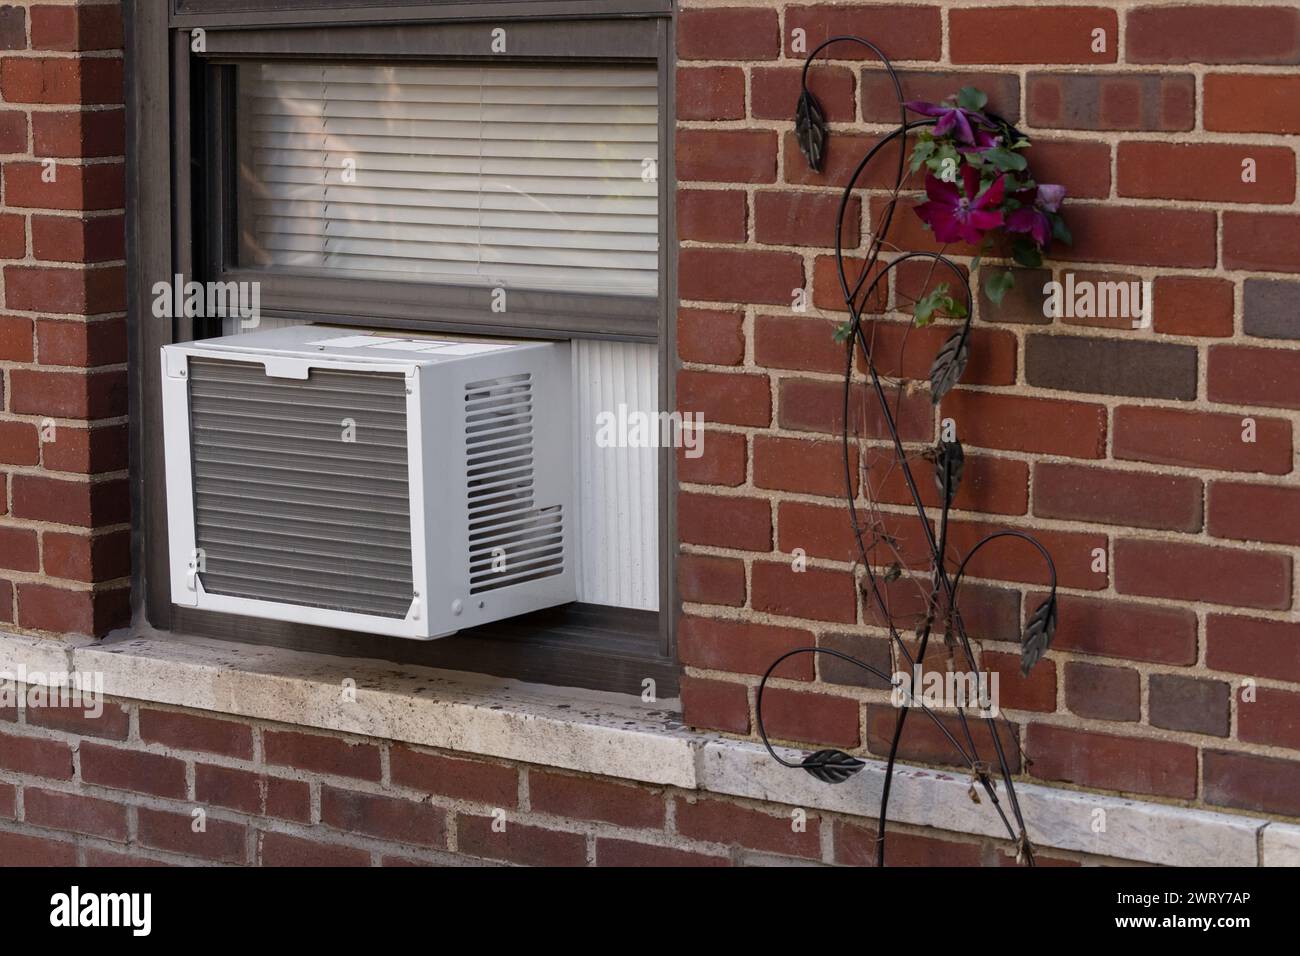 Außenansicht der Klimaanlage Fenstereinheit, die von der Fensterbank eines roten Backsteingebäudes mit einer deorativen Blume daneben ragt Stockfoto